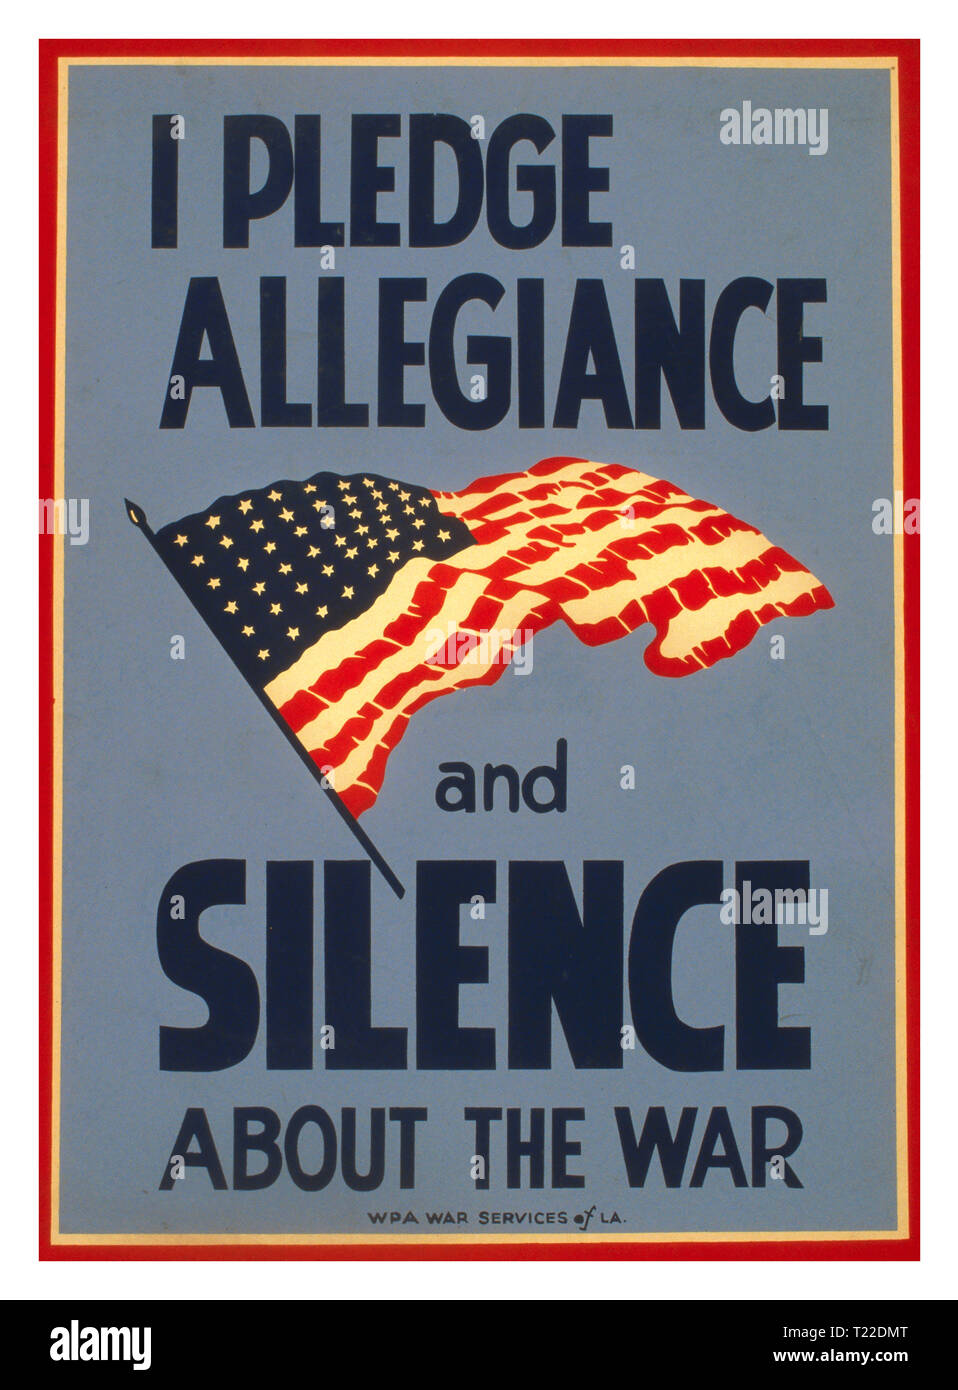 Vintage 1940 Propaganda WW2 Poster USA "prometo lealtad y silencio acerca de la guerra" de la II Guerra Mundial cartel promueve el patriotismo y sugiriendo que la comunicación descuidada puede ser dañino para el esfuerzo de guerra estadounidense, mostrando la bandera de rayas y estrellas. Thomas A. Byrne - diseñador. 1943 Foto de stock